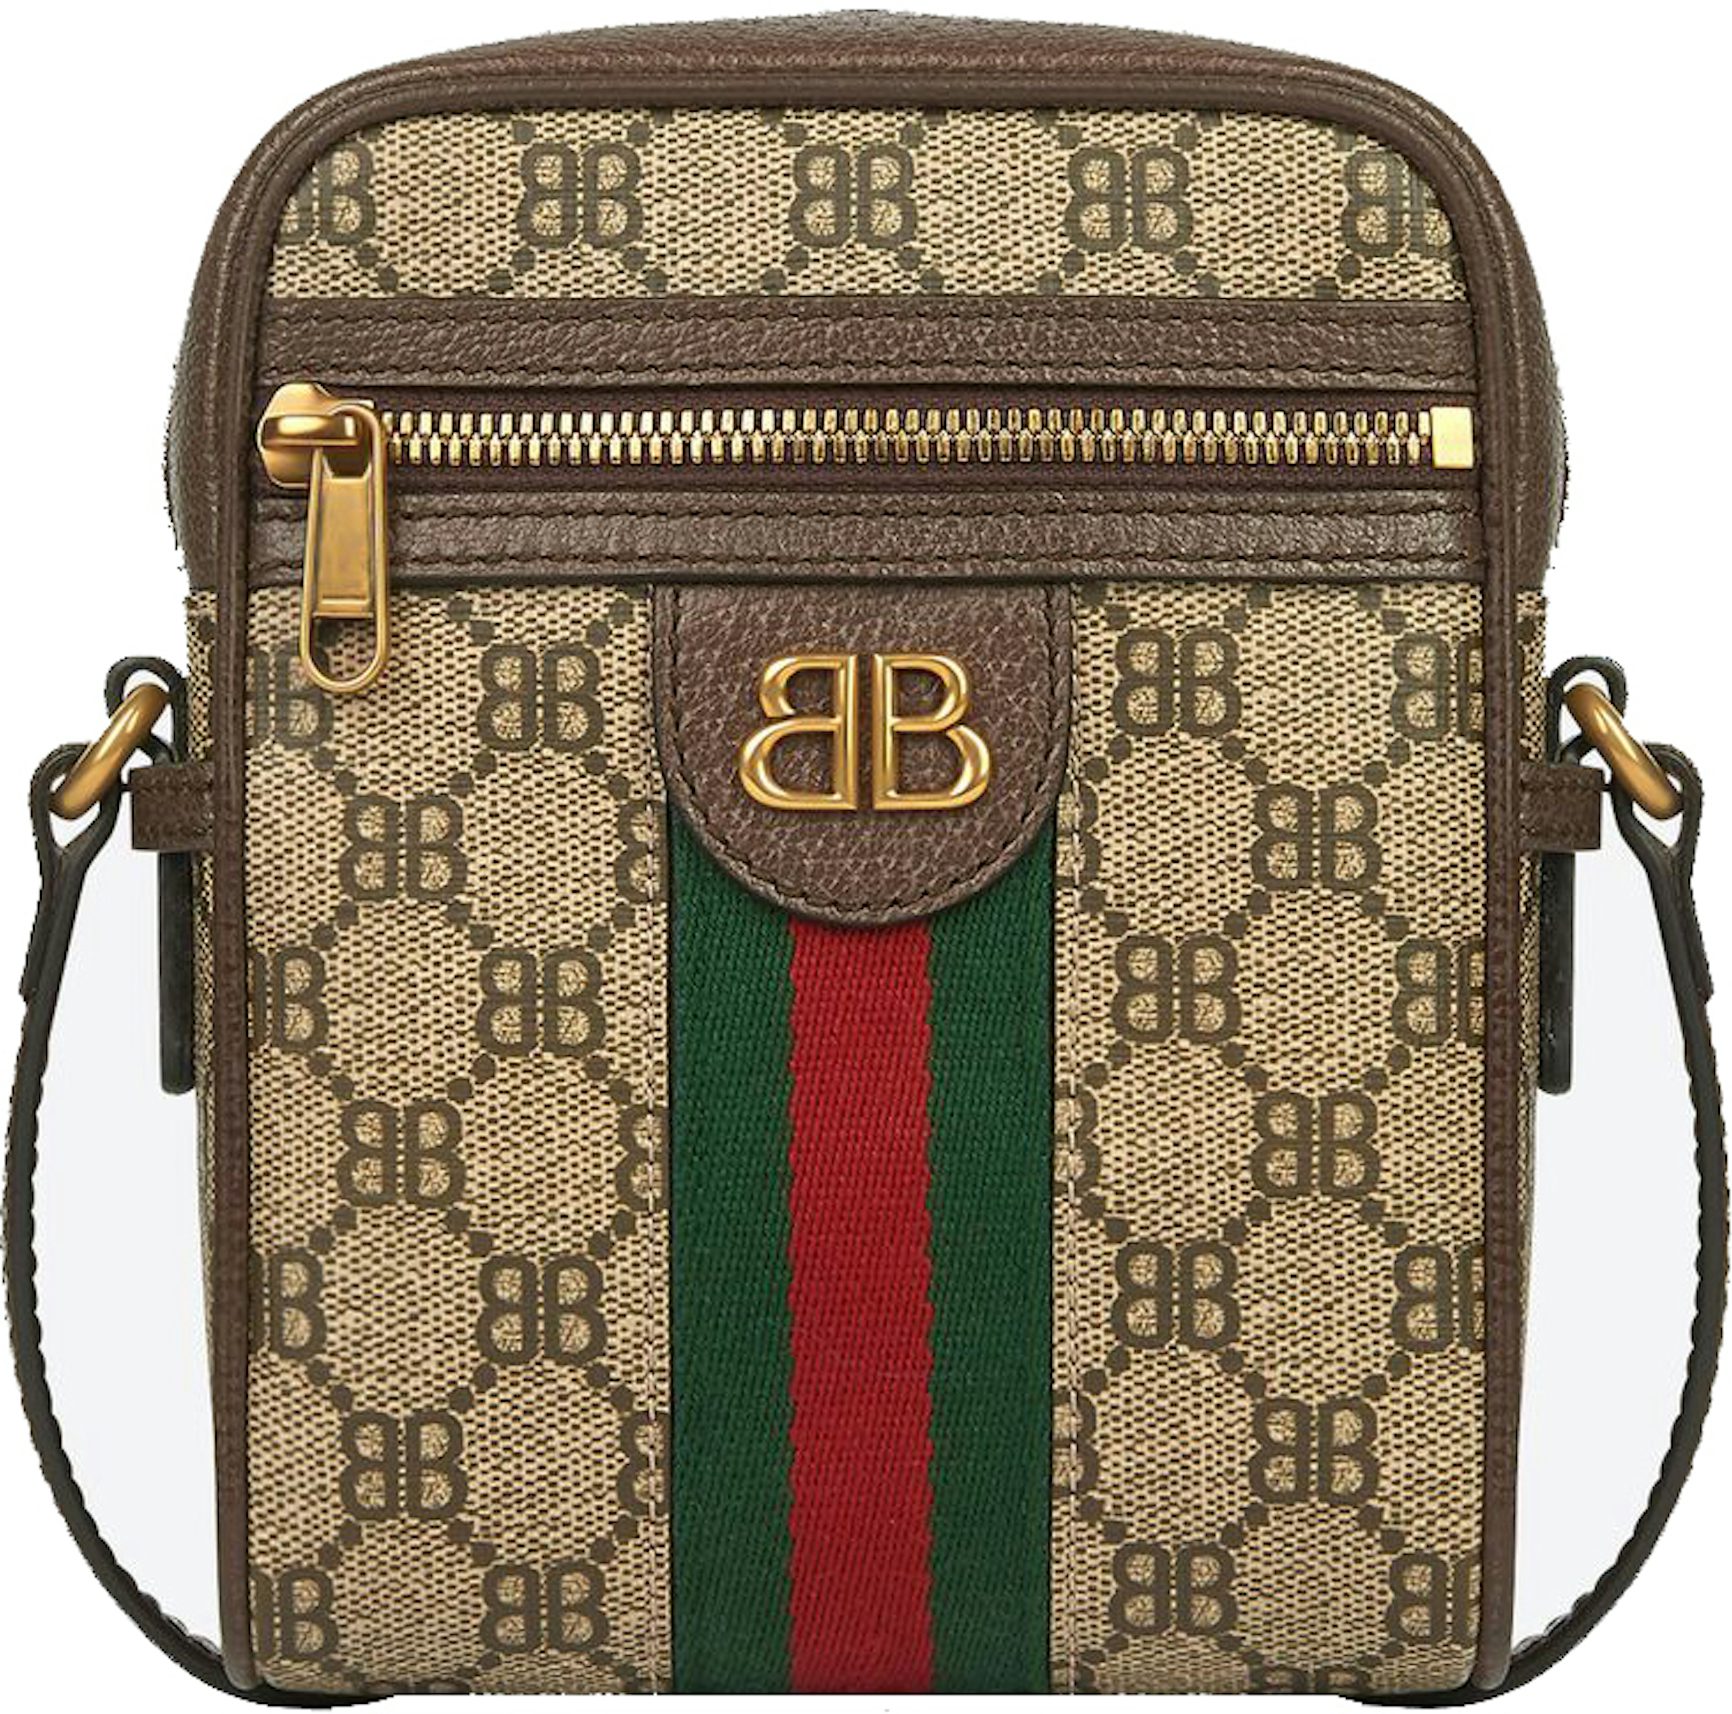 Gucci x Balenciaga The Hacker Project Medium Neo Classic Bag